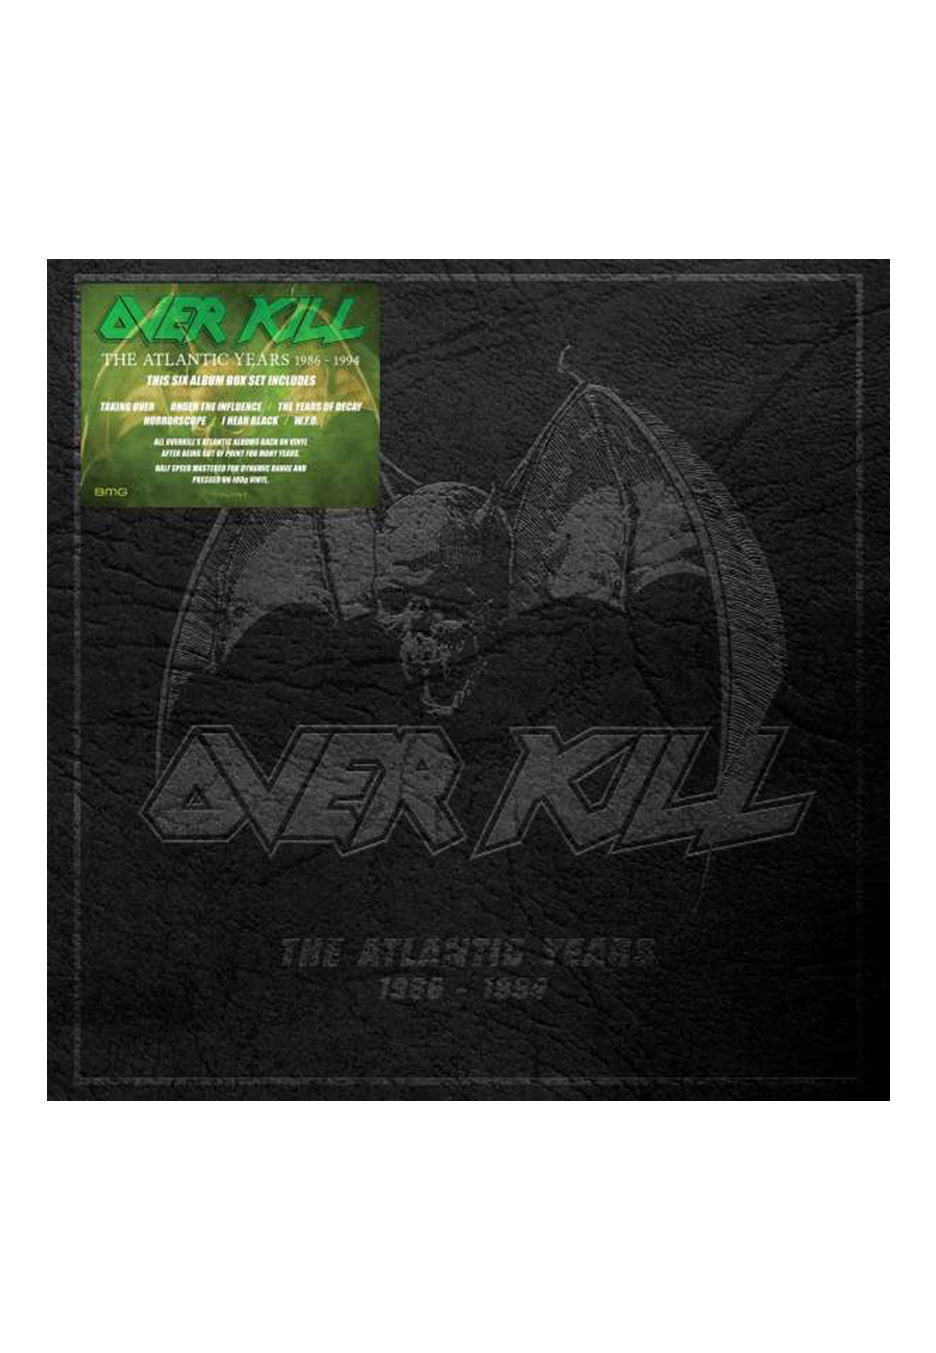 Overkill - The Atlantic Years 1986-1996 - 6 Vinyl Boxset